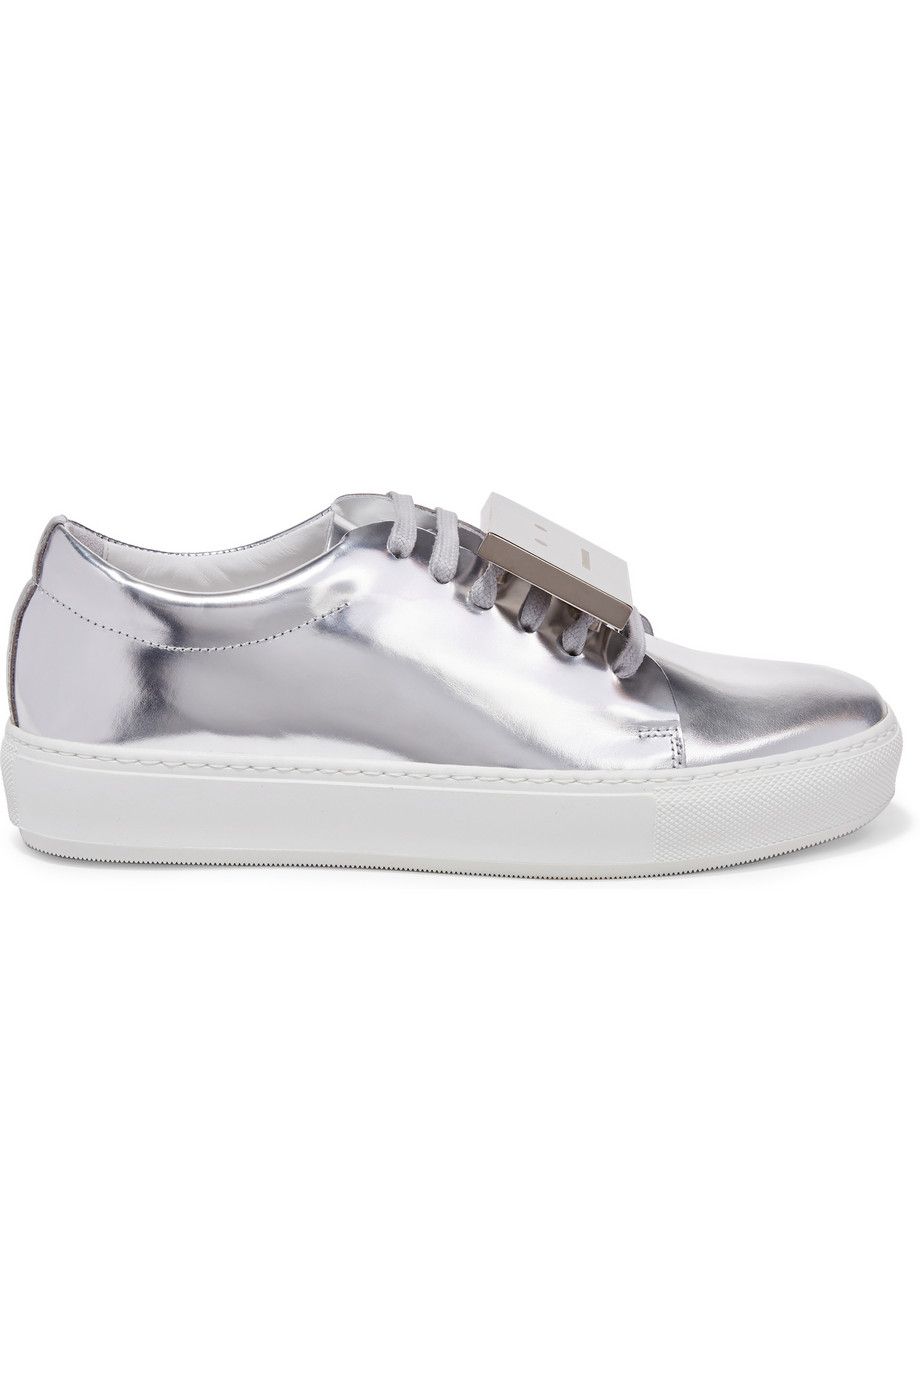 Footwear, Product, Shoe, White, Style, Tan, Grey, Beige, Brand, Silver, 